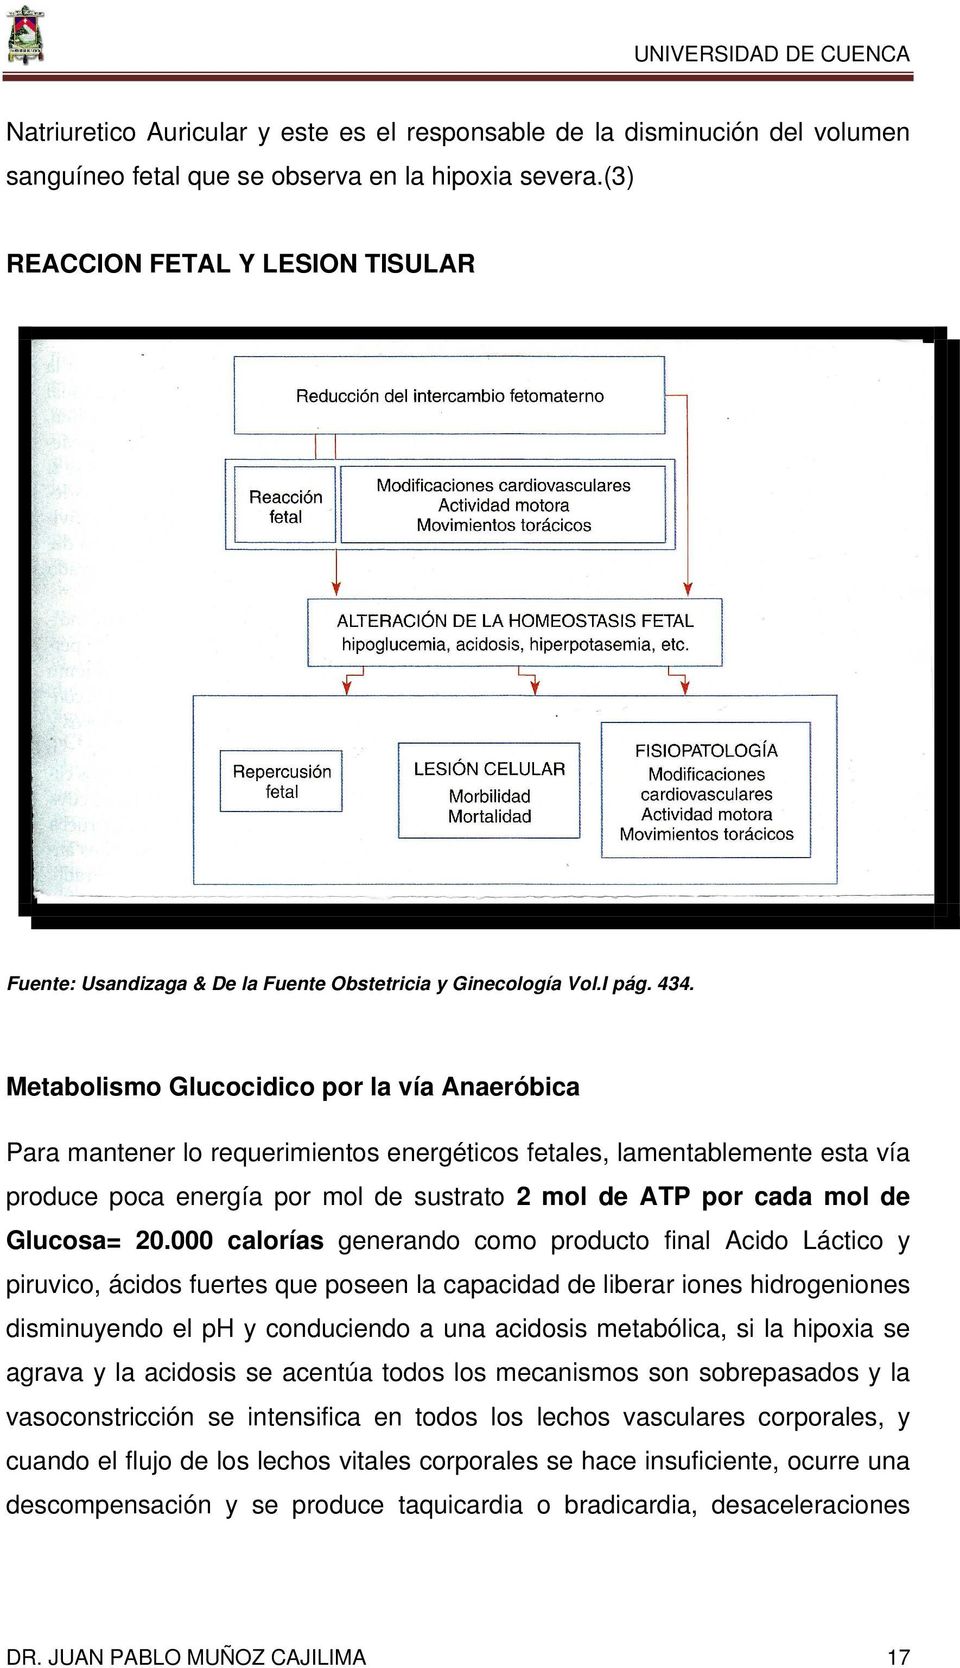 Metabolismo Glucocidico por la vía Anaeróbica Para mantener lo requerimientos energéticos fetales, lamentablemente esta vía produce poca energía por mol de sustrato 2 mol de ATP por cada mol de